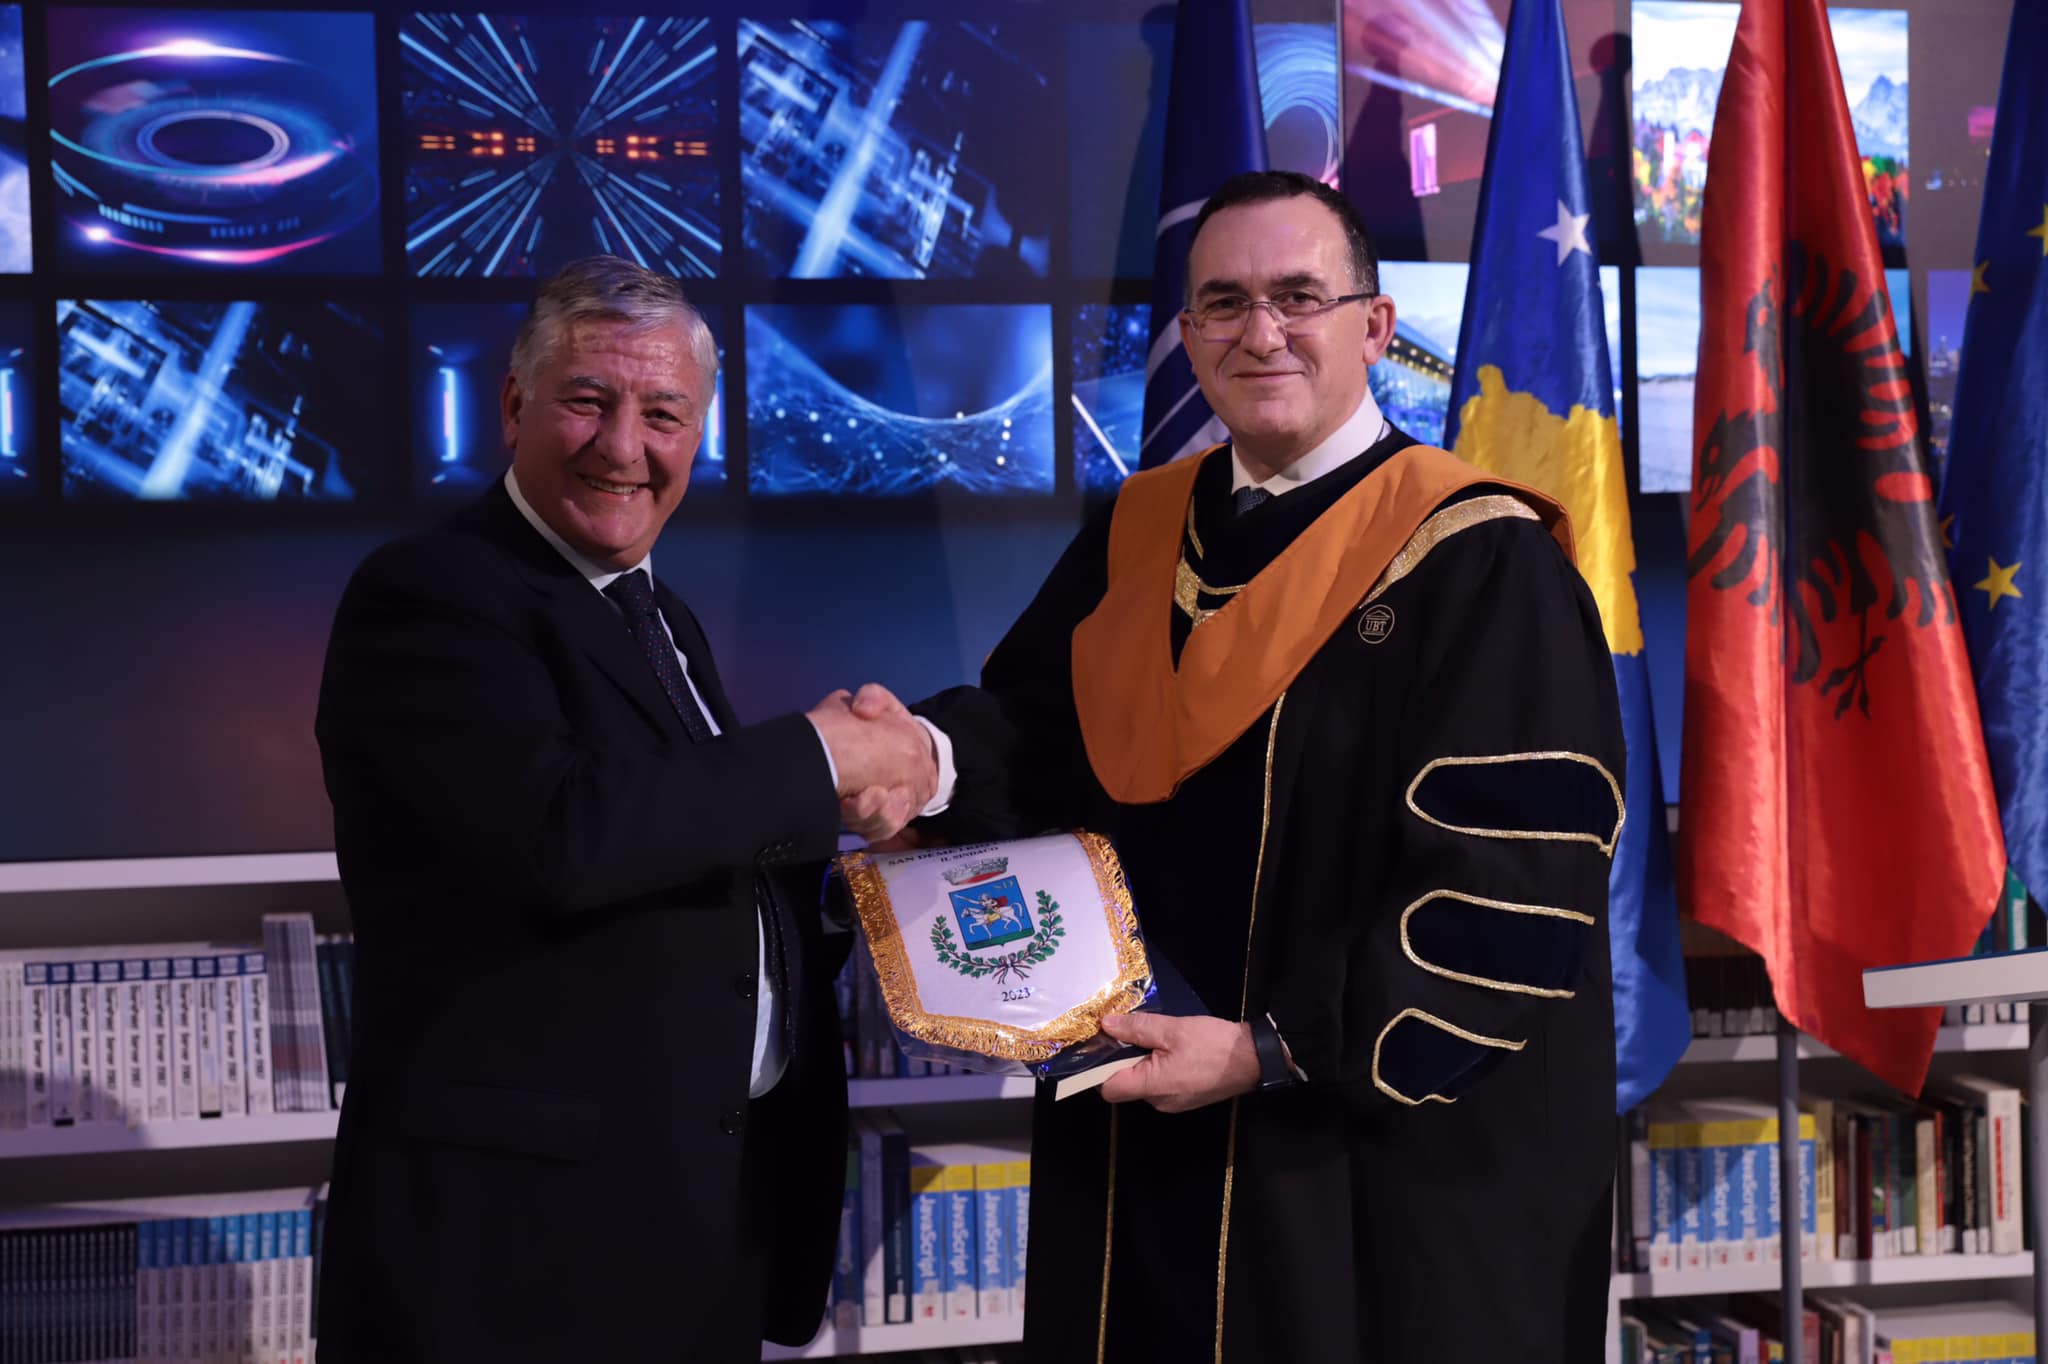 UBT ndau çmimin “Leadership Excellence Award” për Dr. Ernesto Madeo për kontributin në ruajtjen e identitetit kombëtar shqiptar, me fokus në Kalabri dhe ndër arbëreshët e Italisë